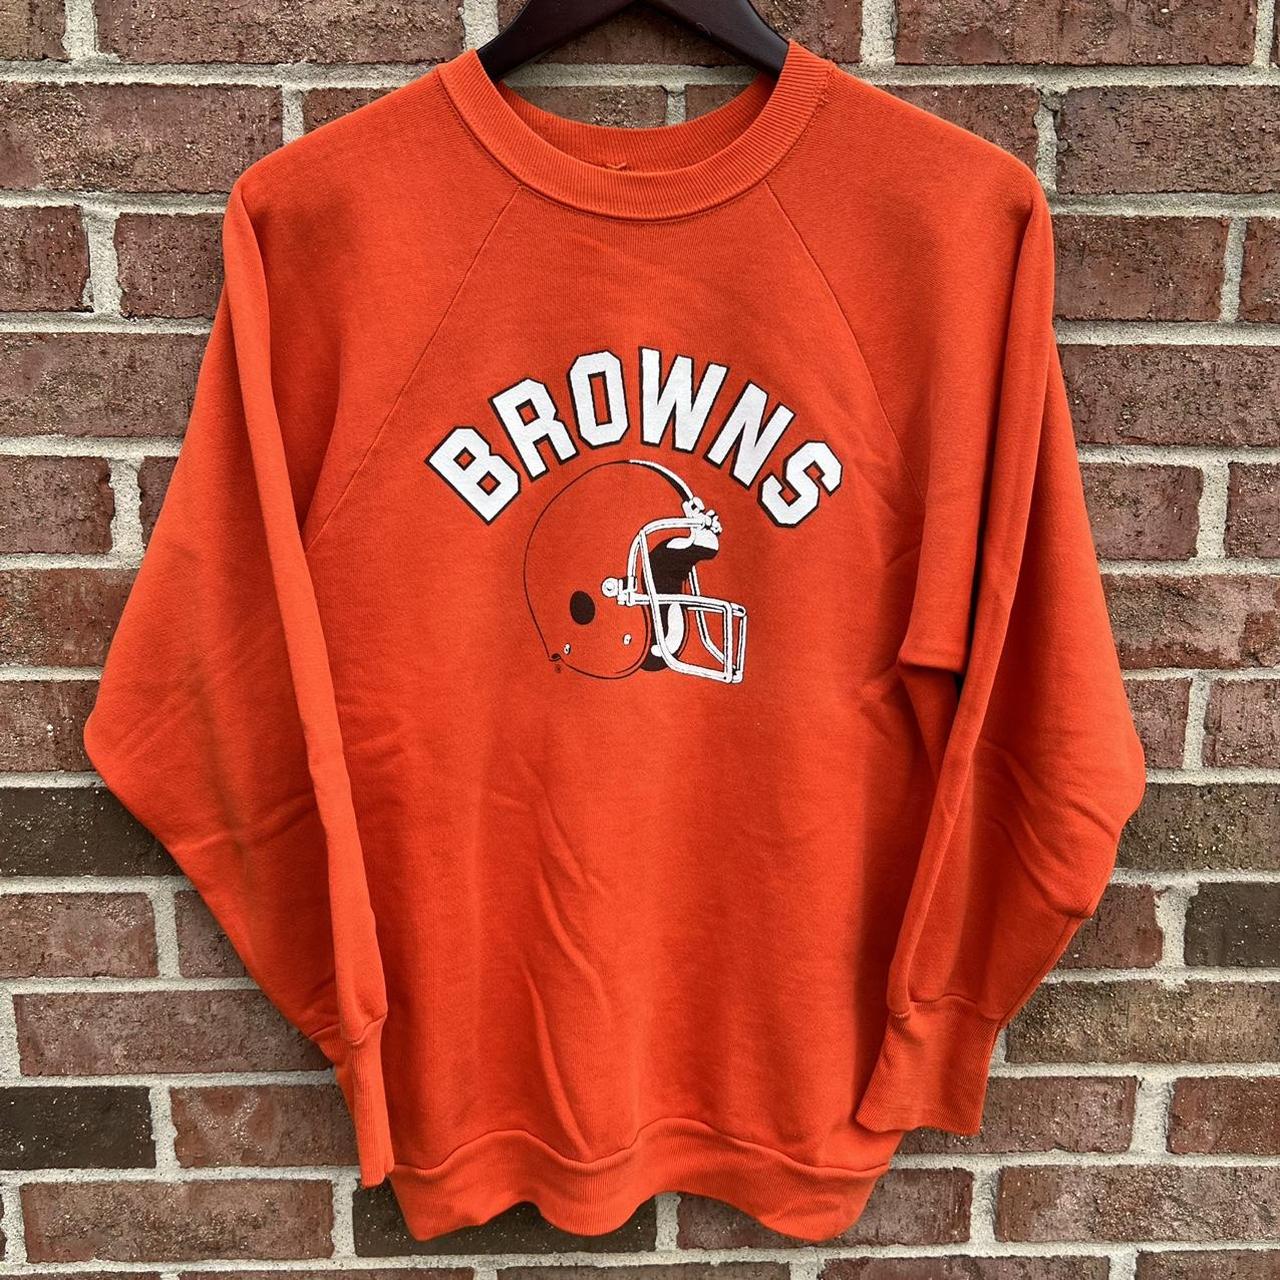 cleveland browns sweatshirt vintage